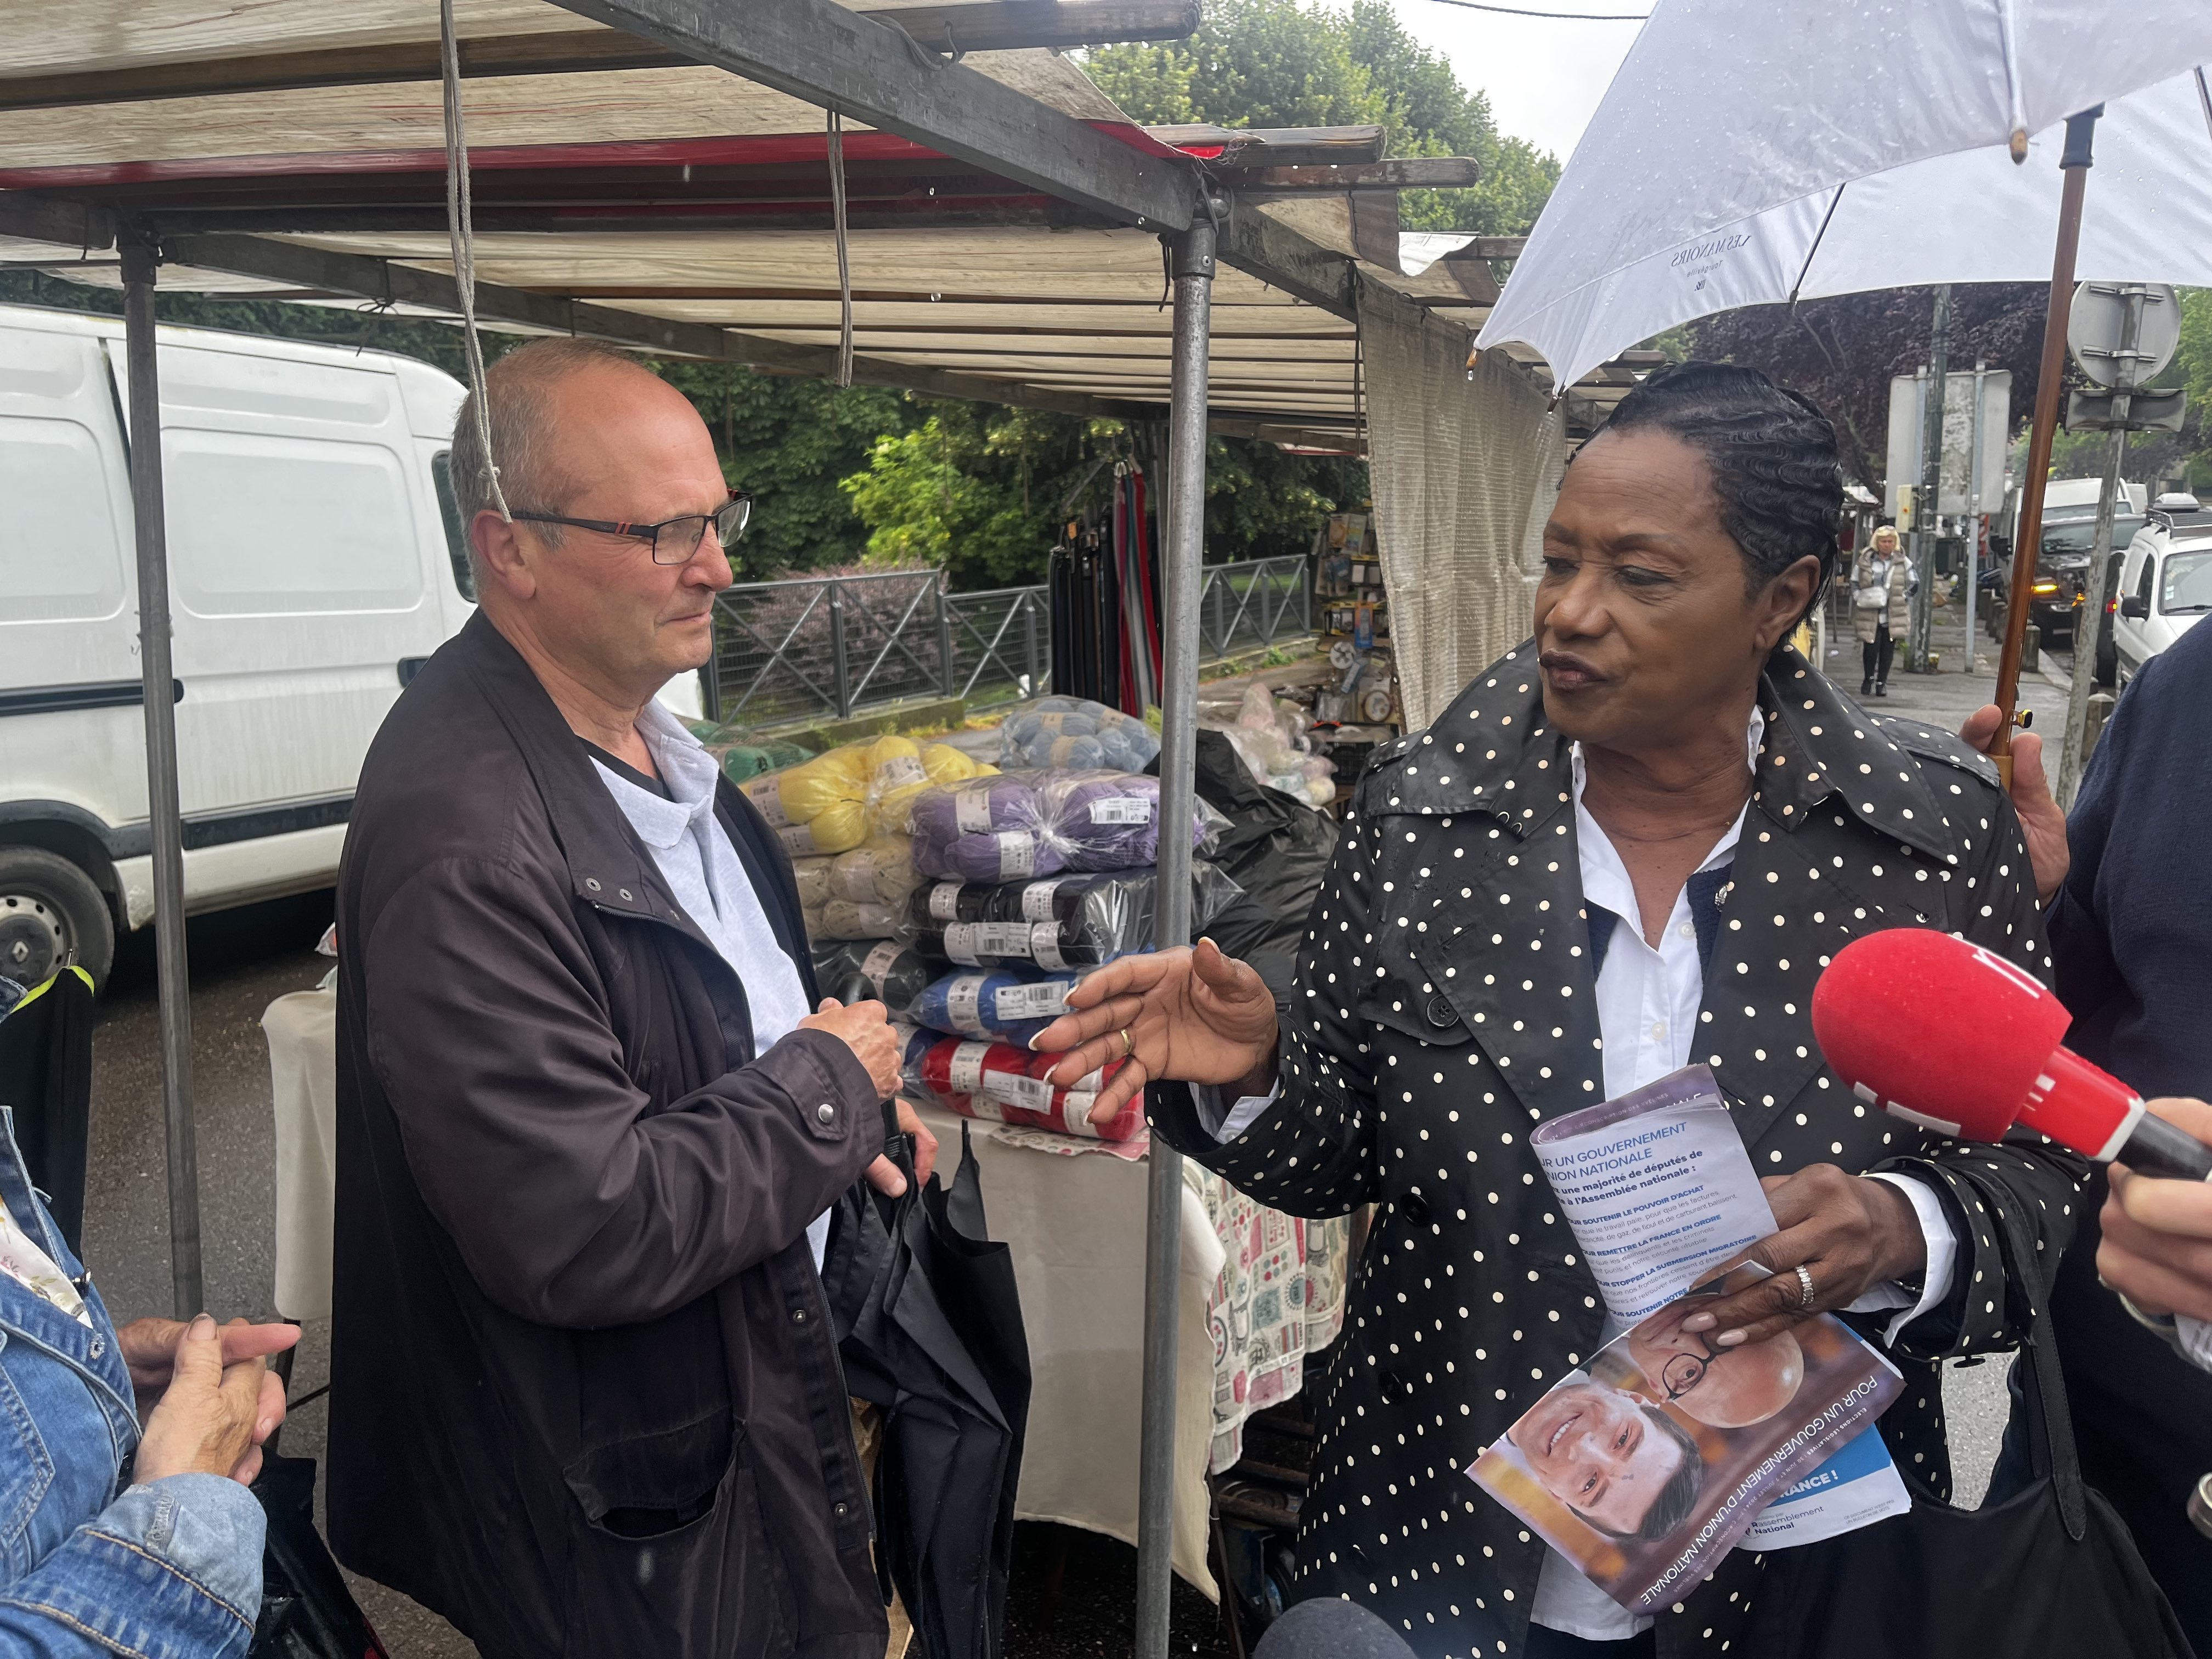     Législatives : candidate LR-RN dans les Yvelines, Babette de Rozières fait campagne

